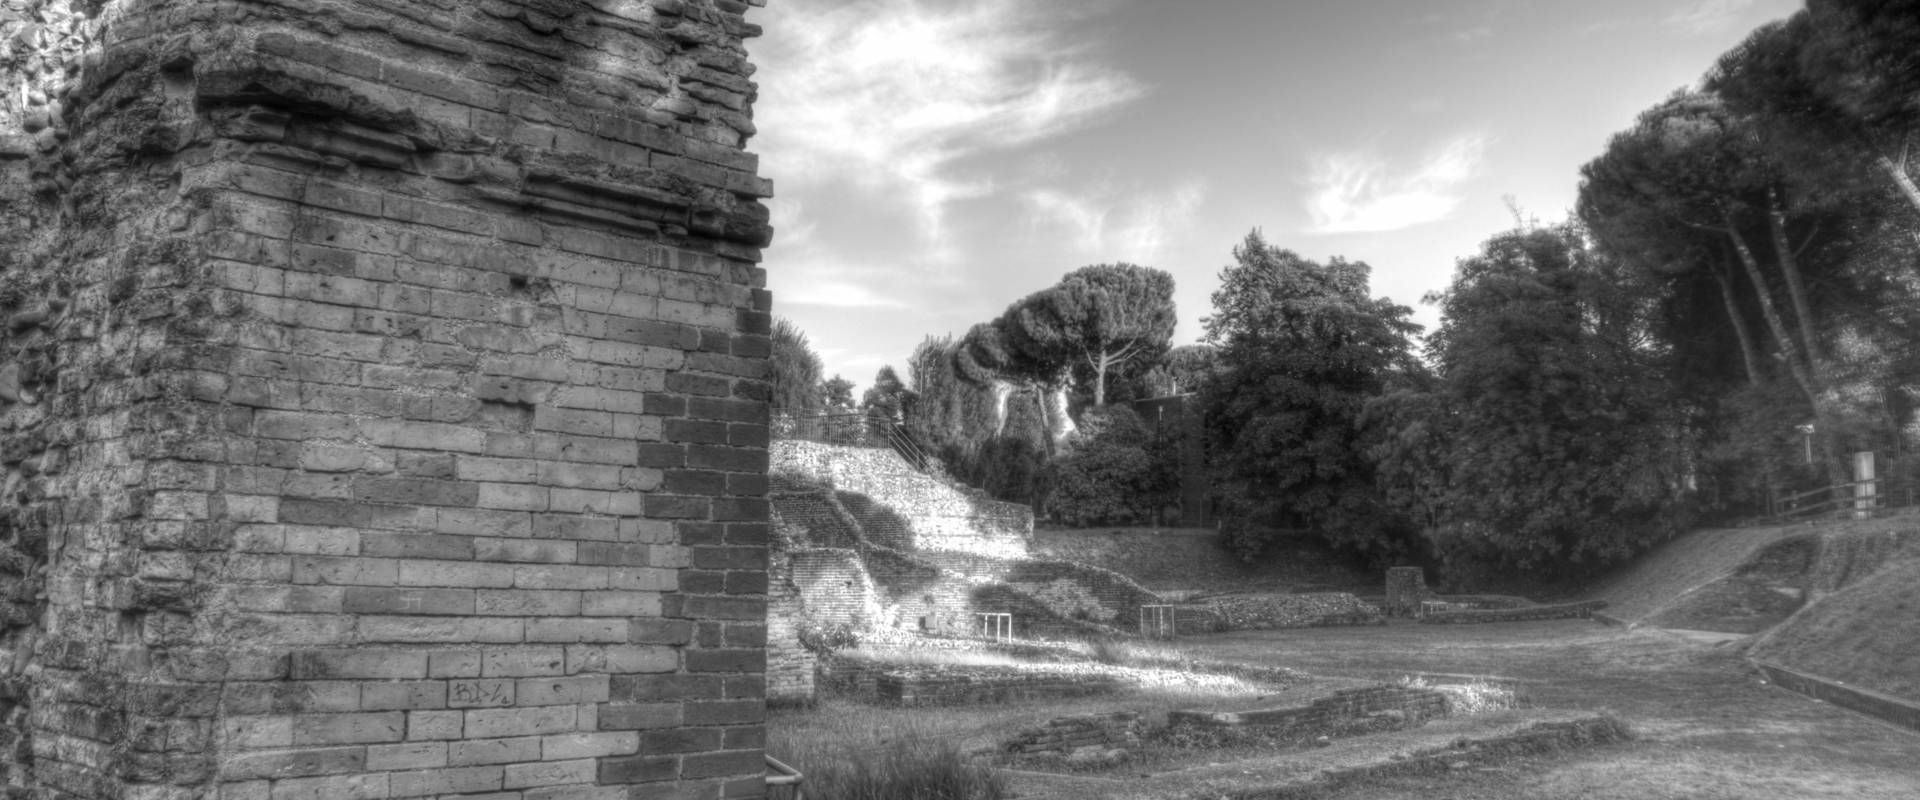 Anfiteatro romano a Rimini foto di GianlucaMoretti